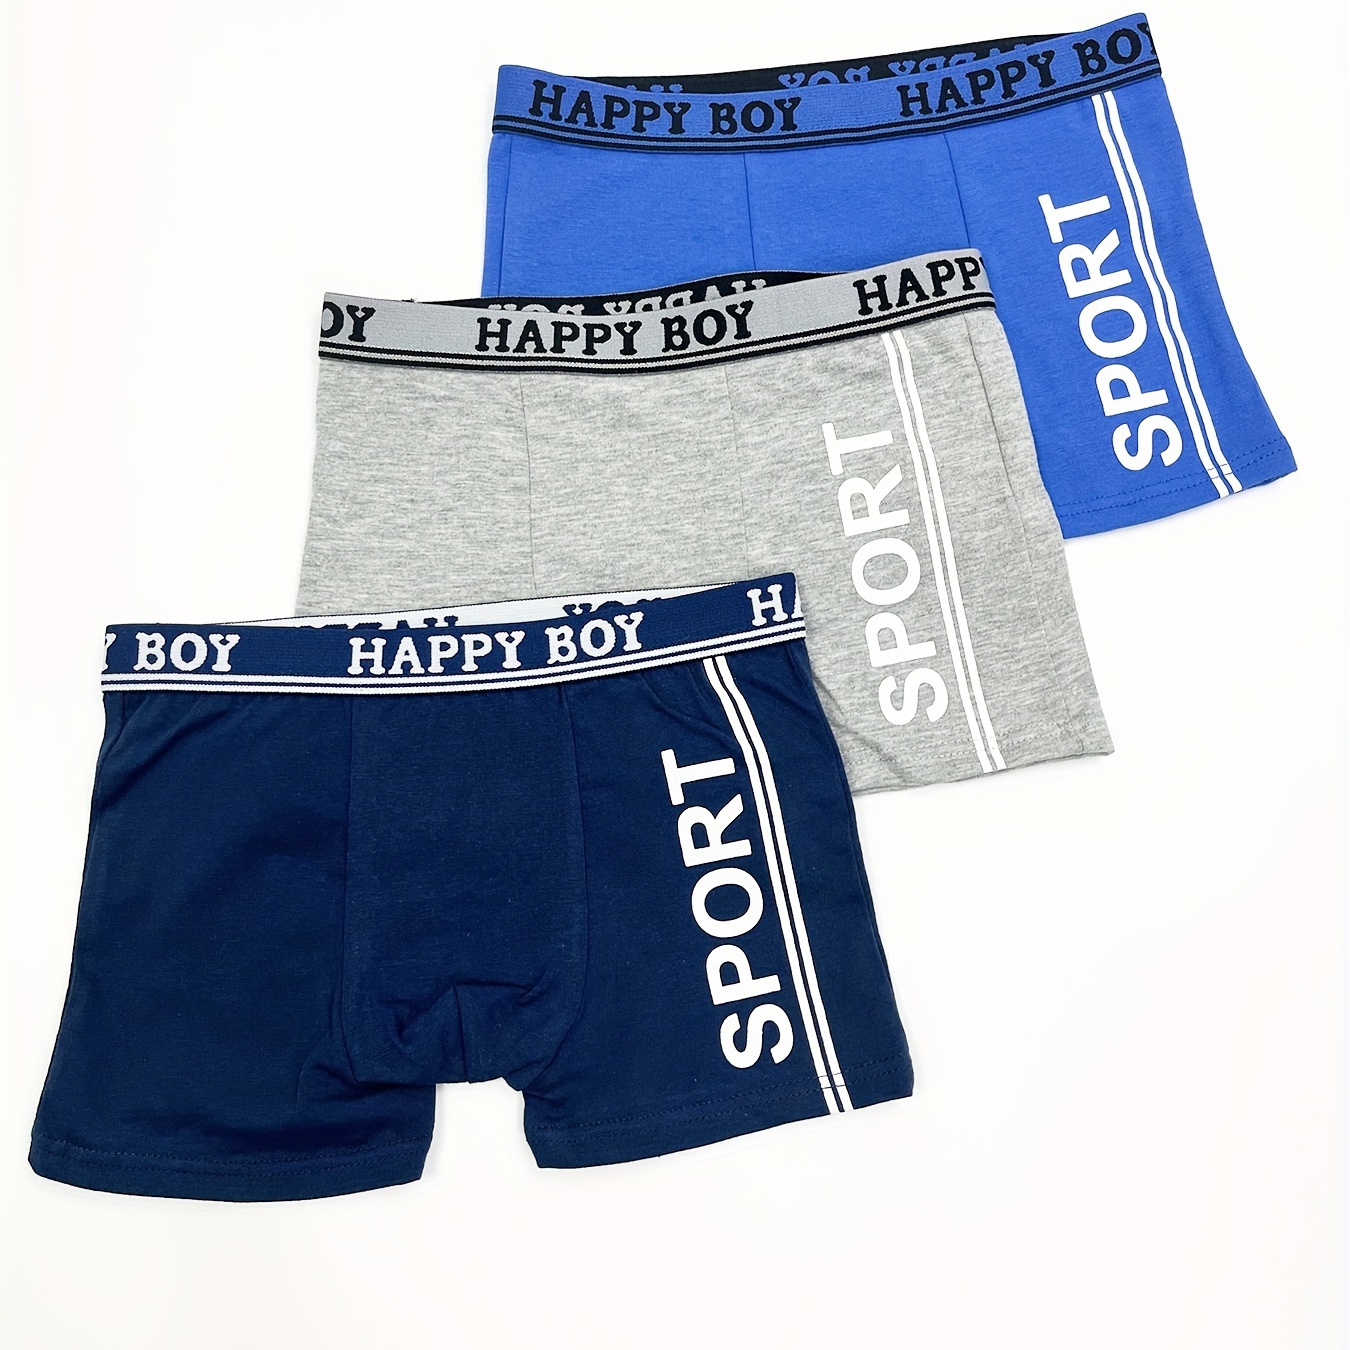 

3pcs Boys Sport Boxer Briefs Soft Comfortable Cotton Underwear Breathable Kids Clothes